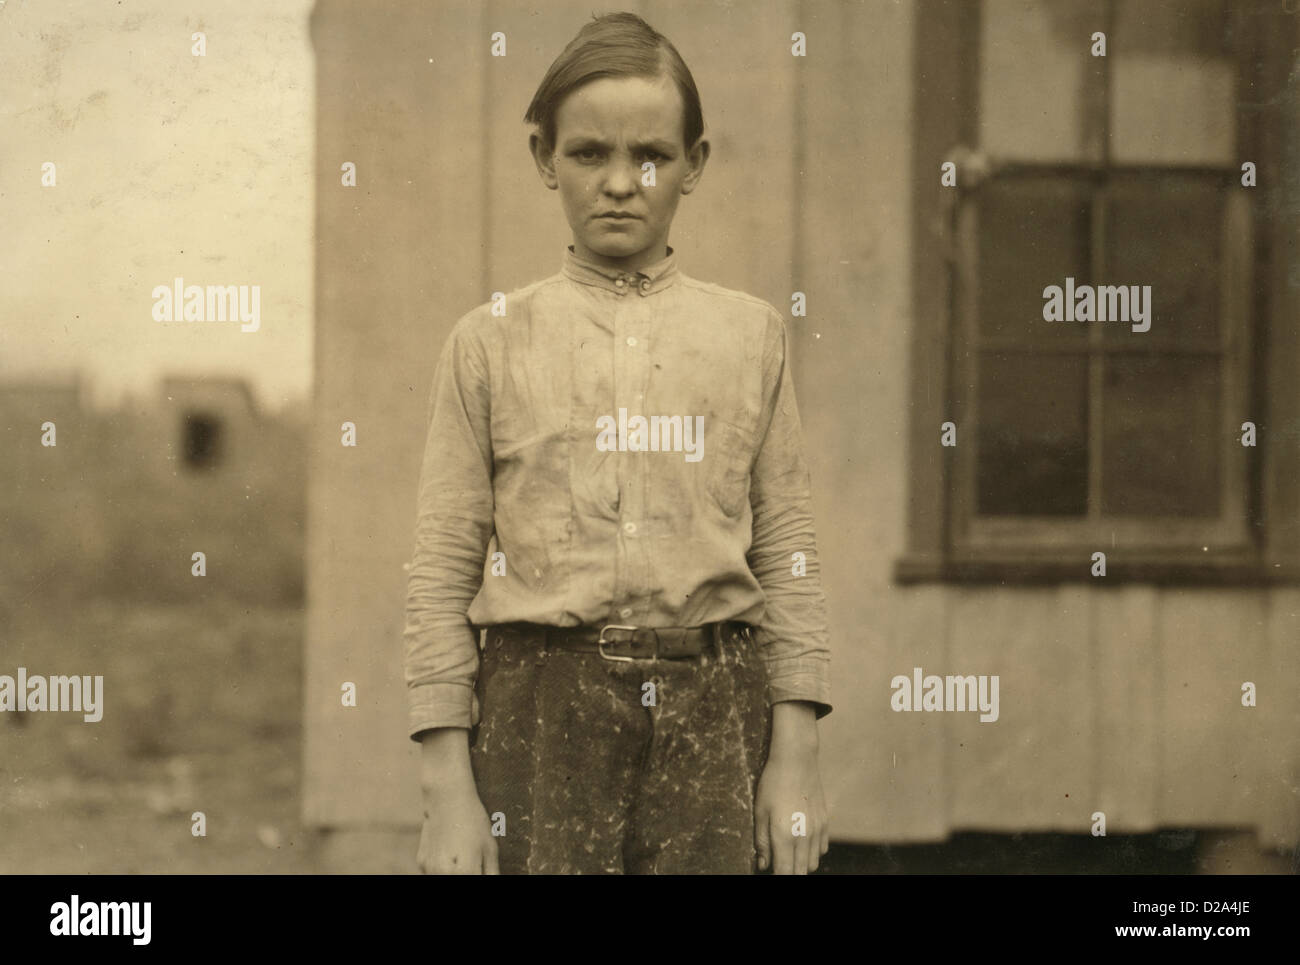 Dreizehn Jahre alte Abnehmer Charlie Lott In Cotton Mill West seine Familien-Datensatz sagt geboren 12. März 1900 Jahr gearbeitet hat Stockfoto